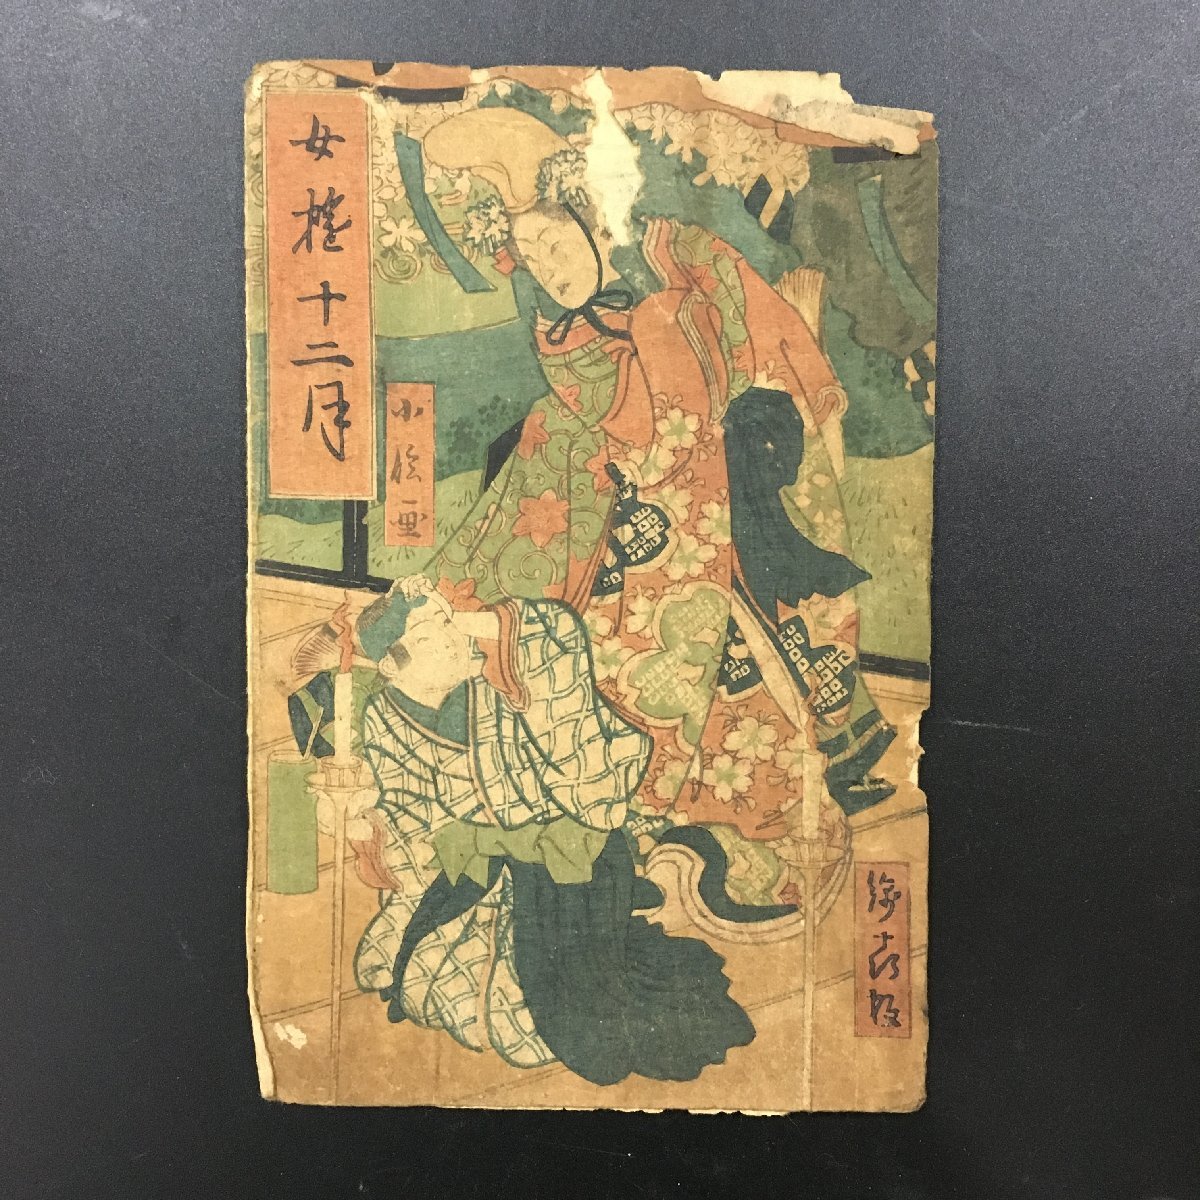 목판화, 씌우다, 하세가와 고신(Hasegawa Koshin), 나카혼(12x18cm), 우키요에, 니시키에, 그림, 우키요에, 인쇄물, 다른 사람